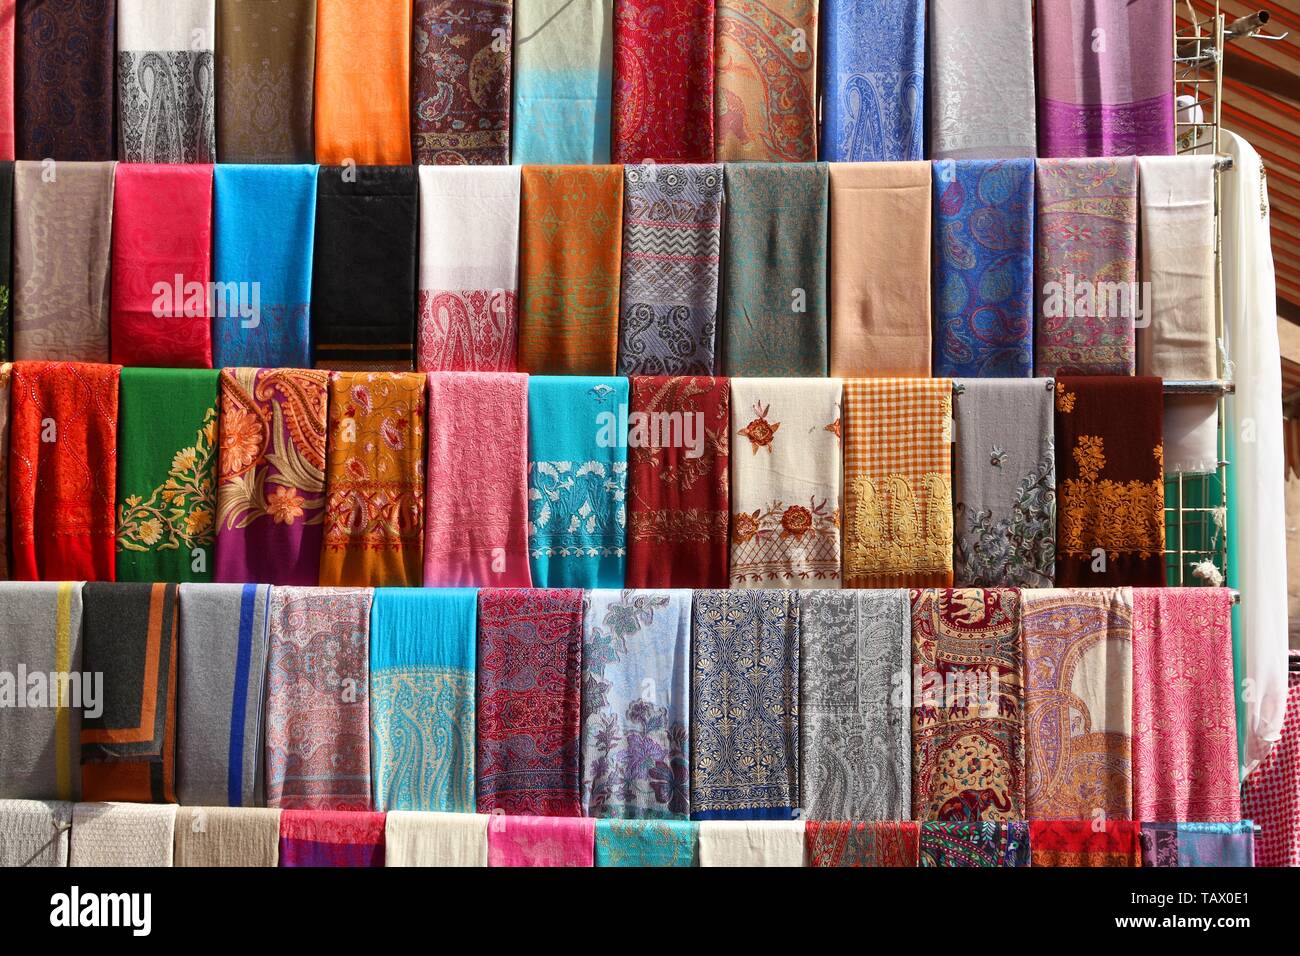 Marché de la mode de Dubaï - Moyen-Orient foulard pashmina boutique Photo  Stock - Alamy